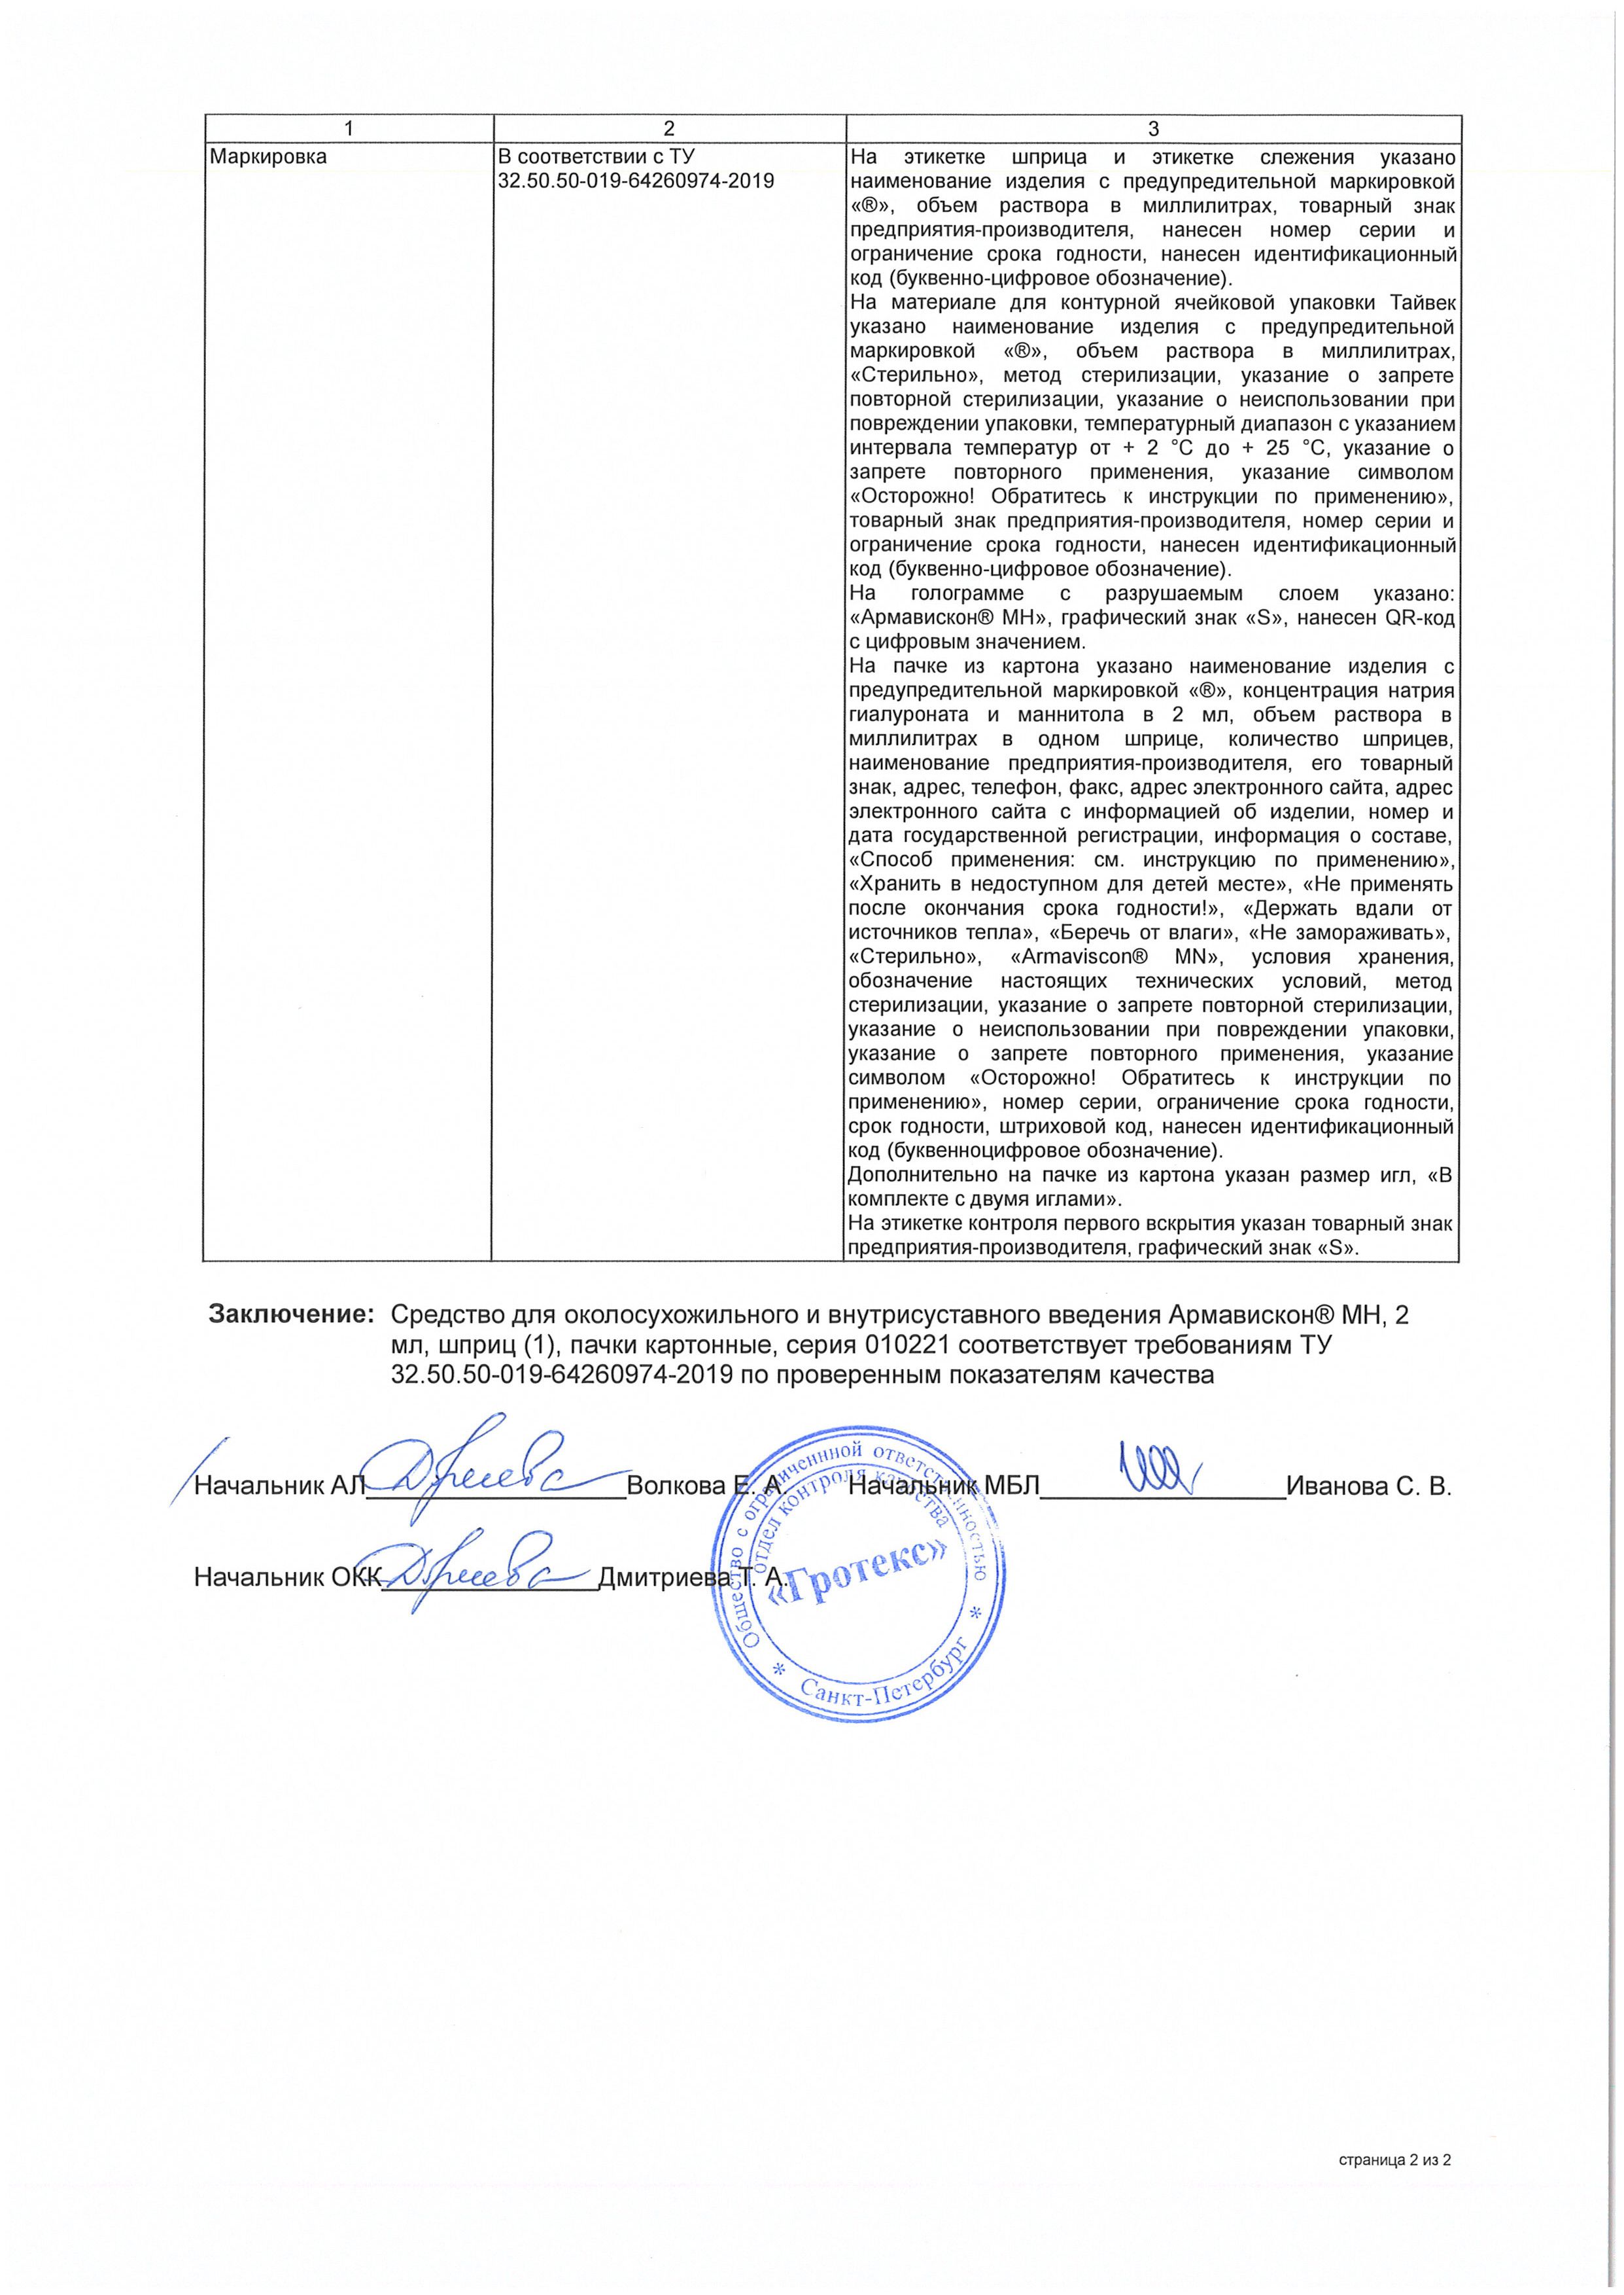 Армавискон МН сертификат